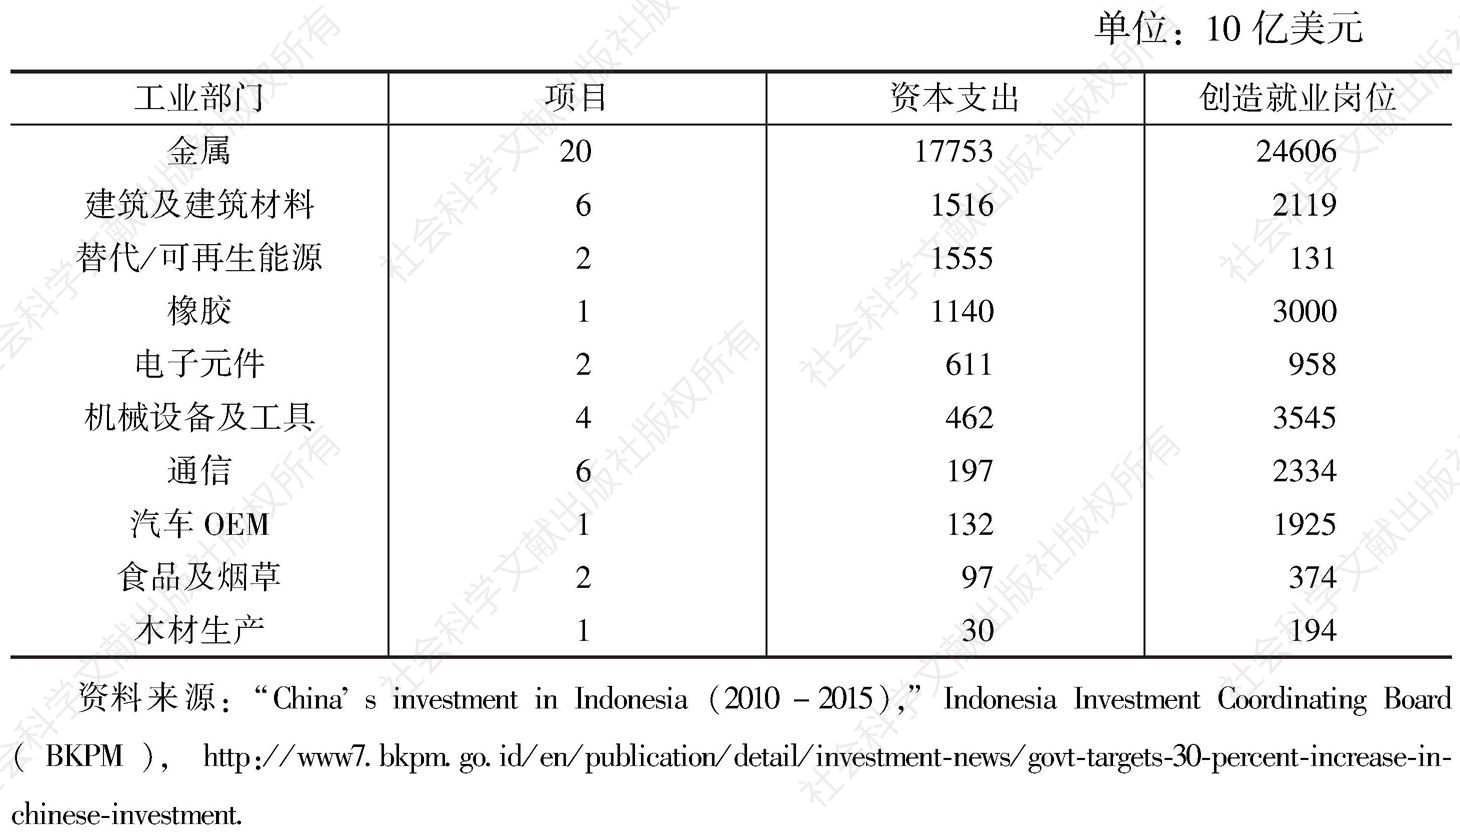 表1 中国在印度尼西亚的投资情况（2010～2015年）